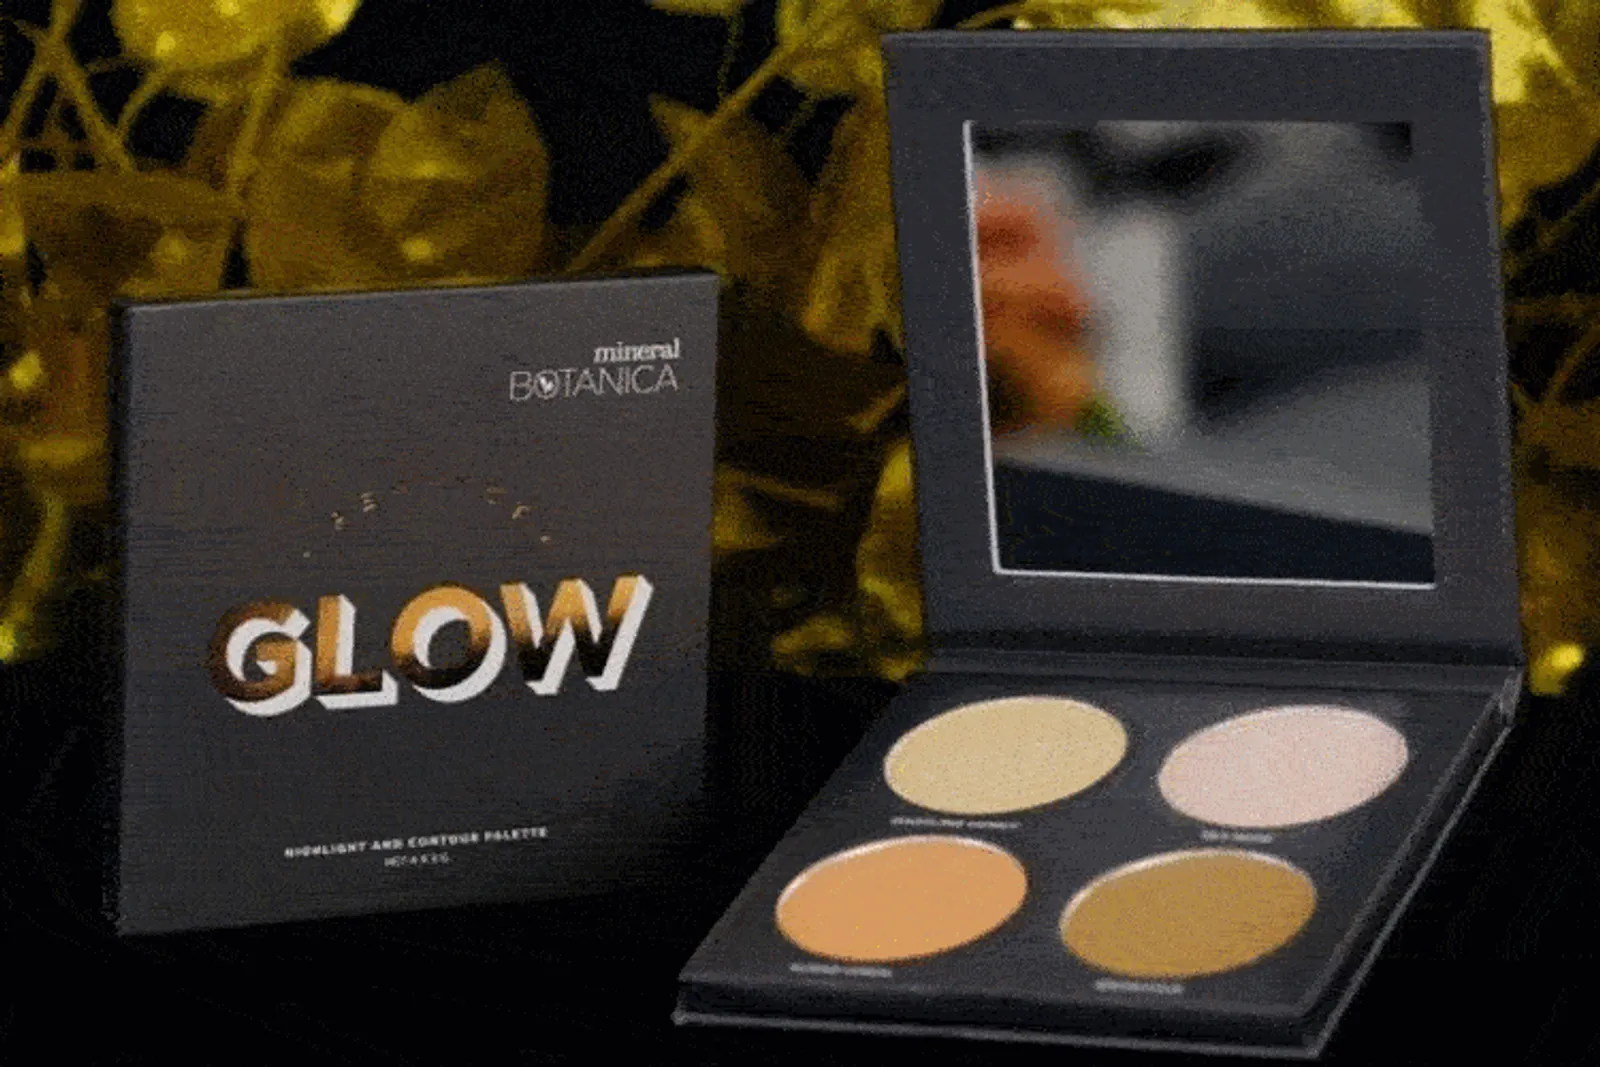 Tampil Glowing dengan Rangkaian Makeup Terbaru dari Mineral Botanica 